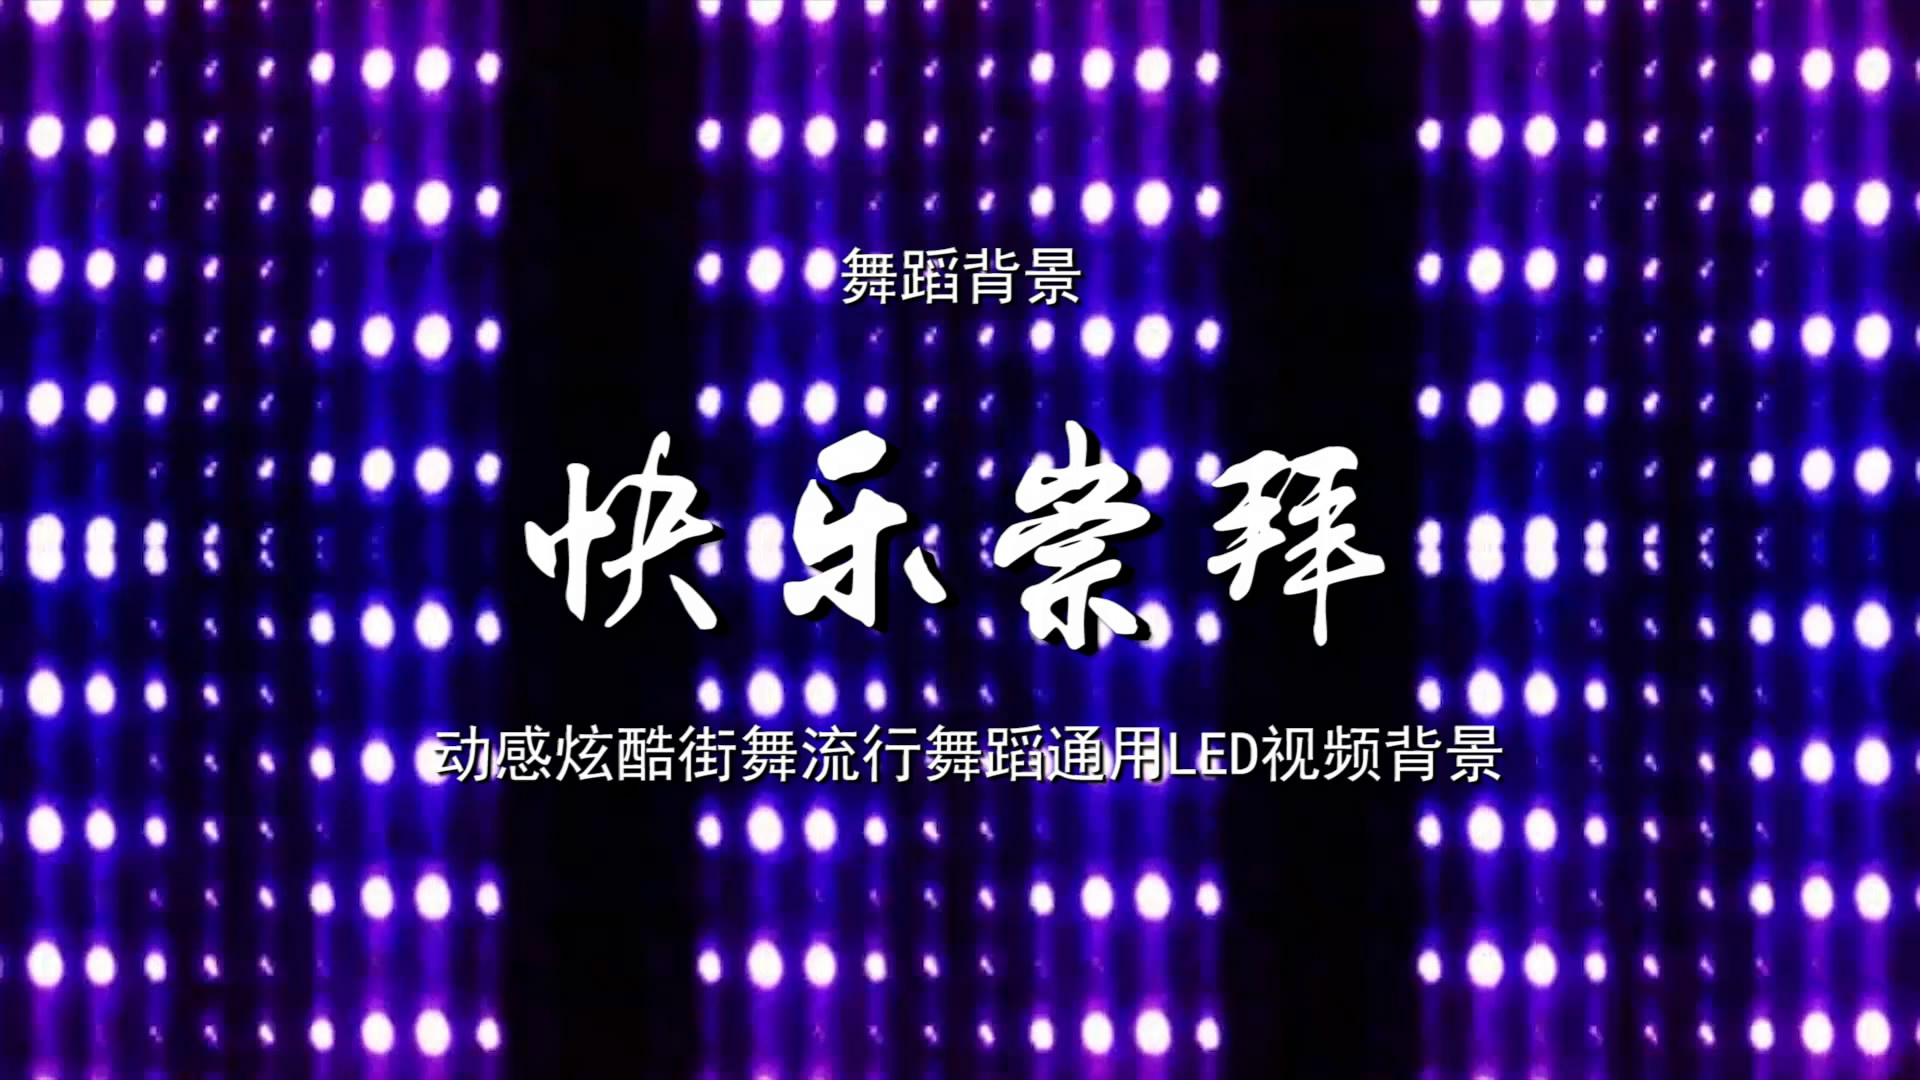 快乐崇拜 动感炫酷街舞流行歌舞LED背景大屏幕视频素材TV